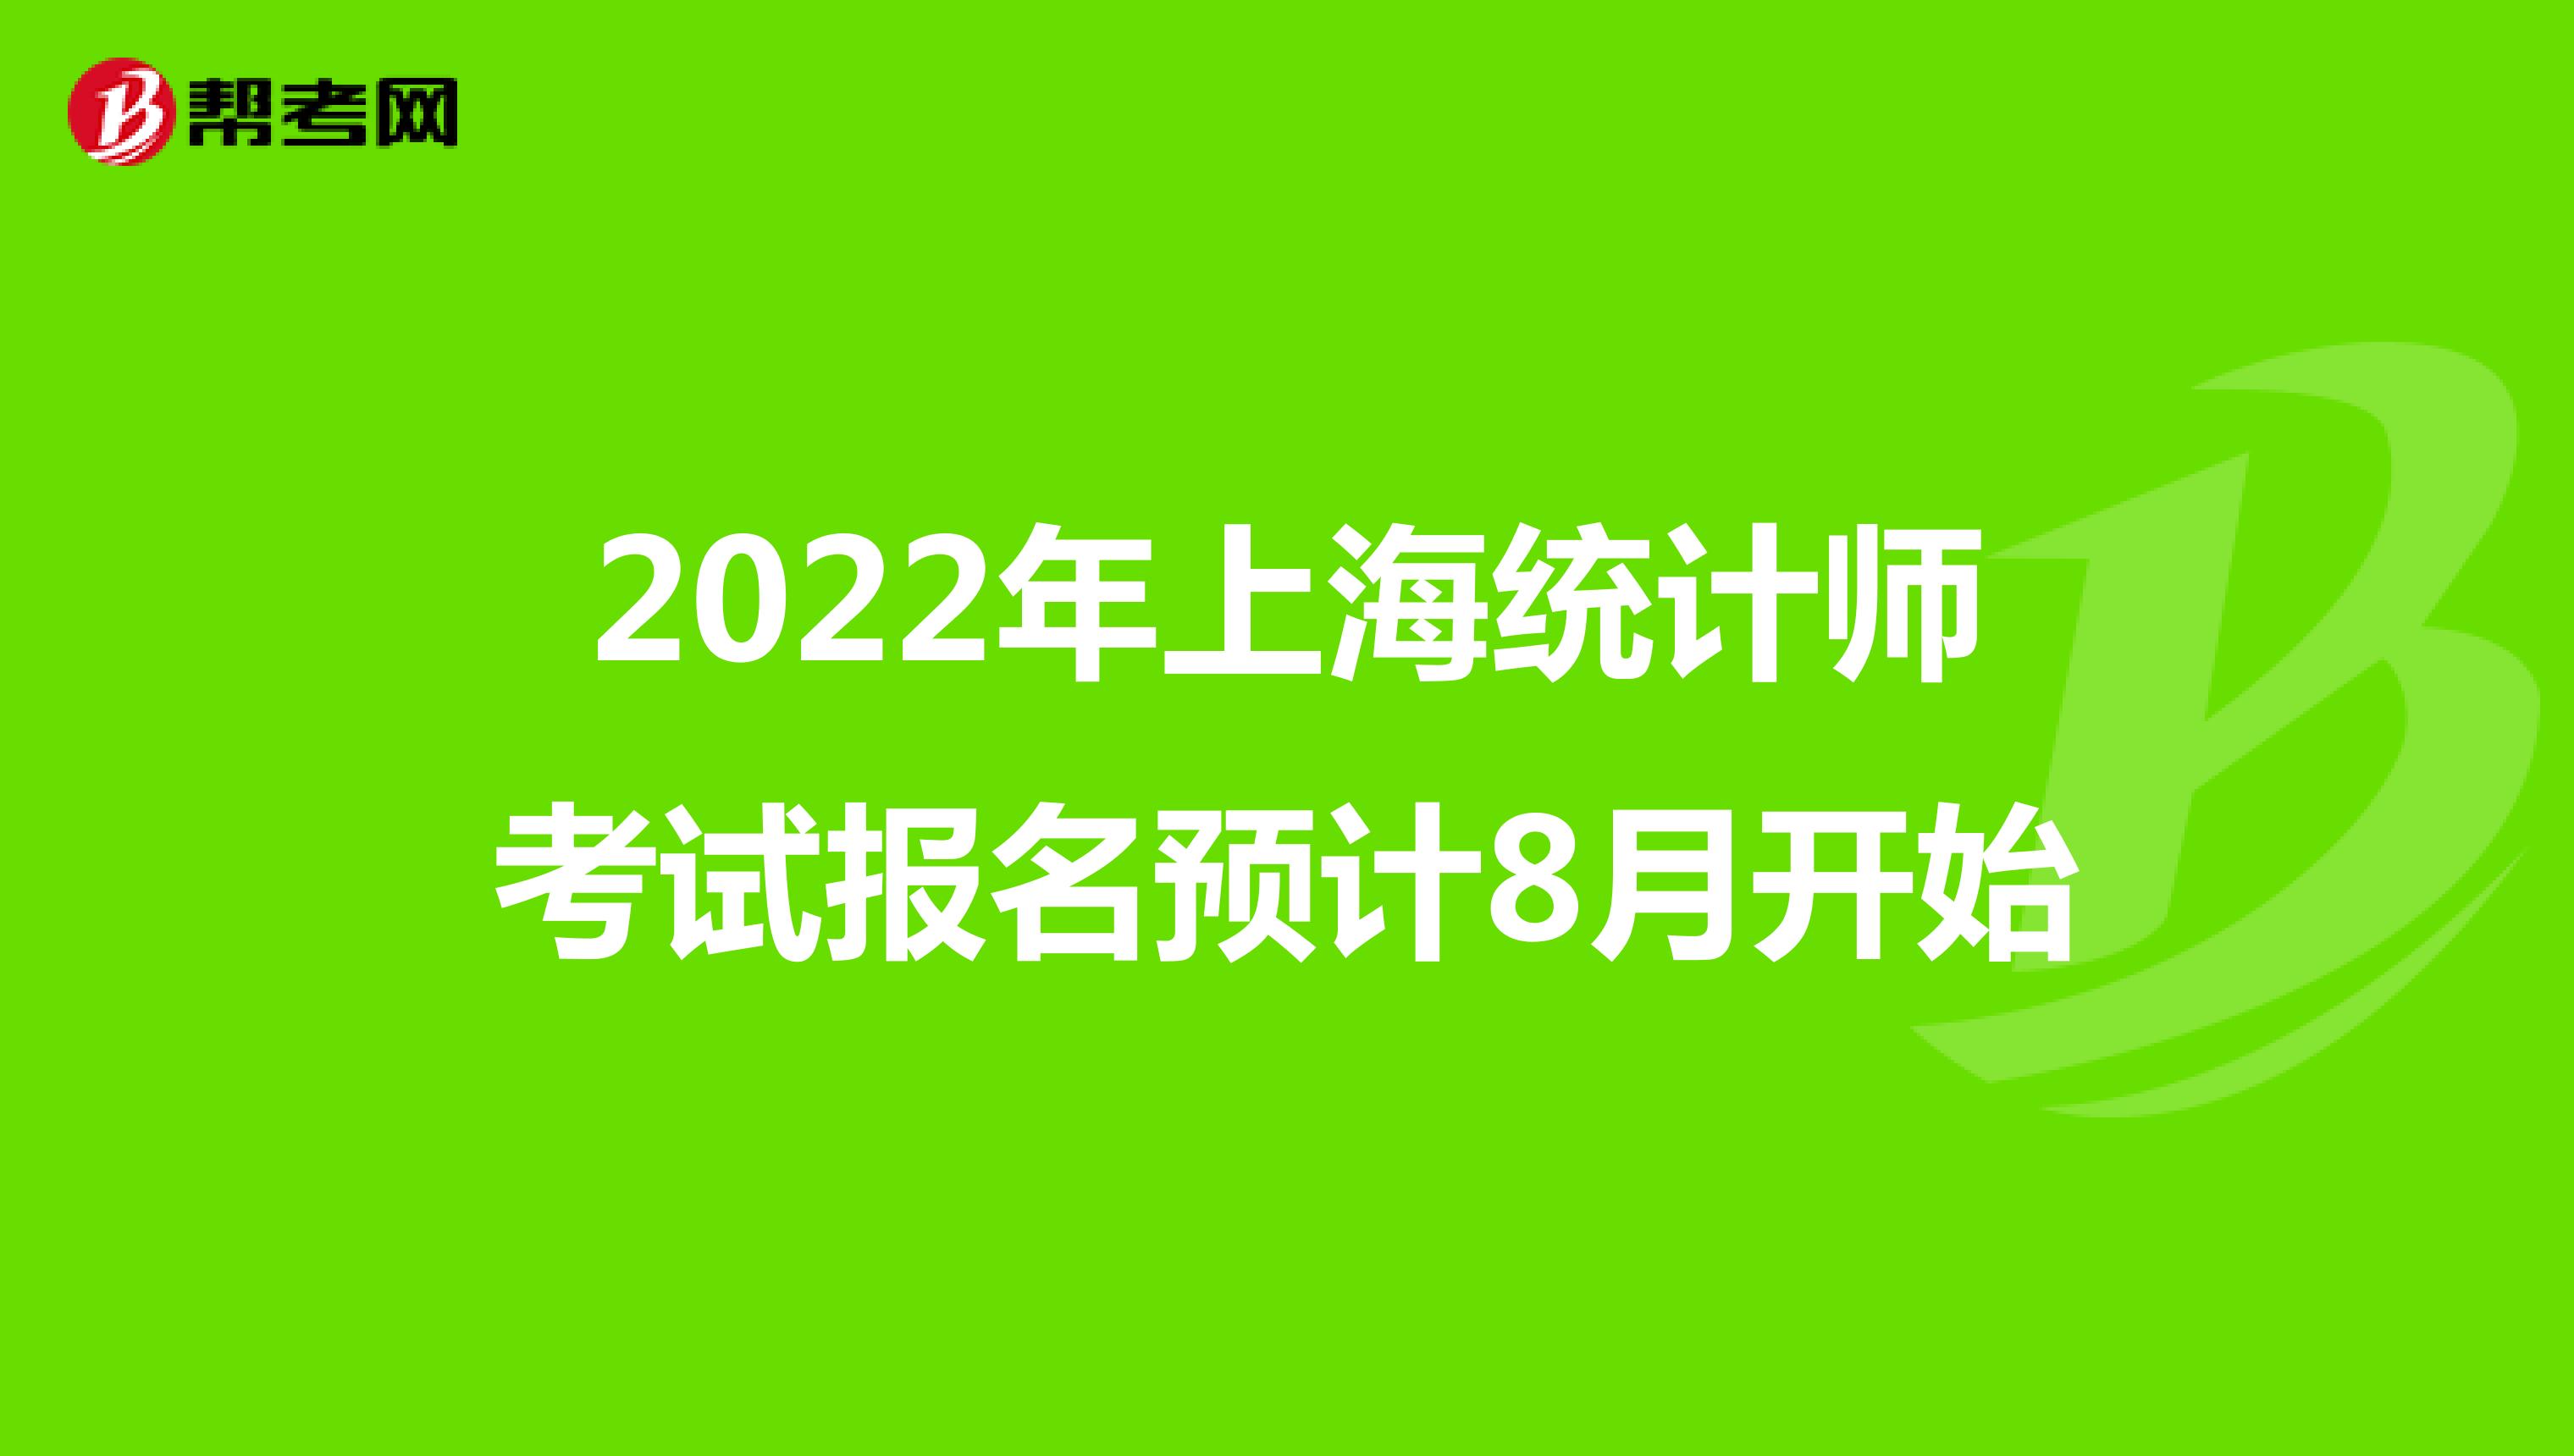 2022年上海统计师考试报名预计8月开始